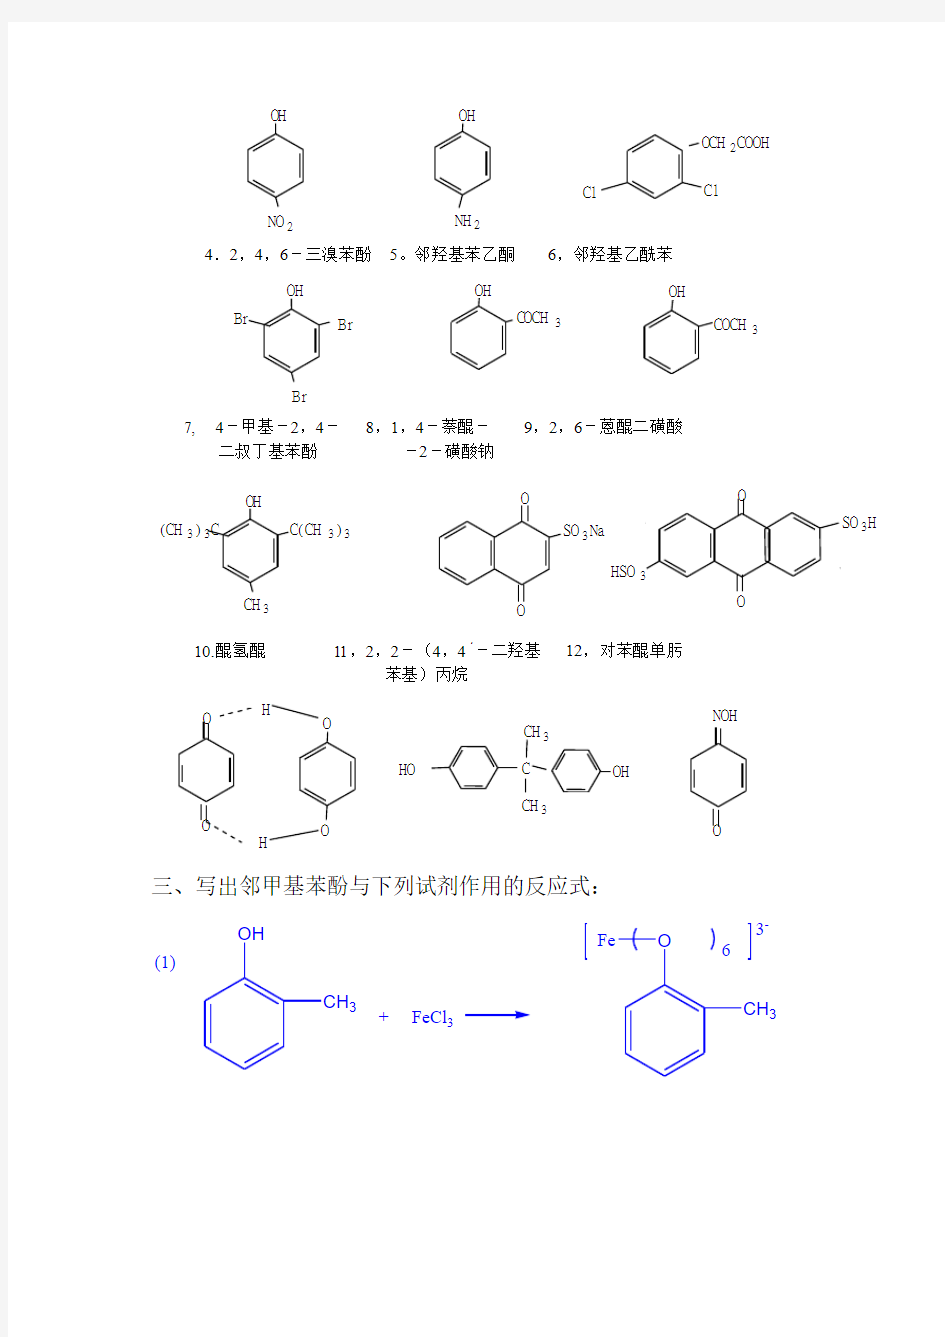 高教第二版(徐寿昌)有机化学课后习题答案第11章